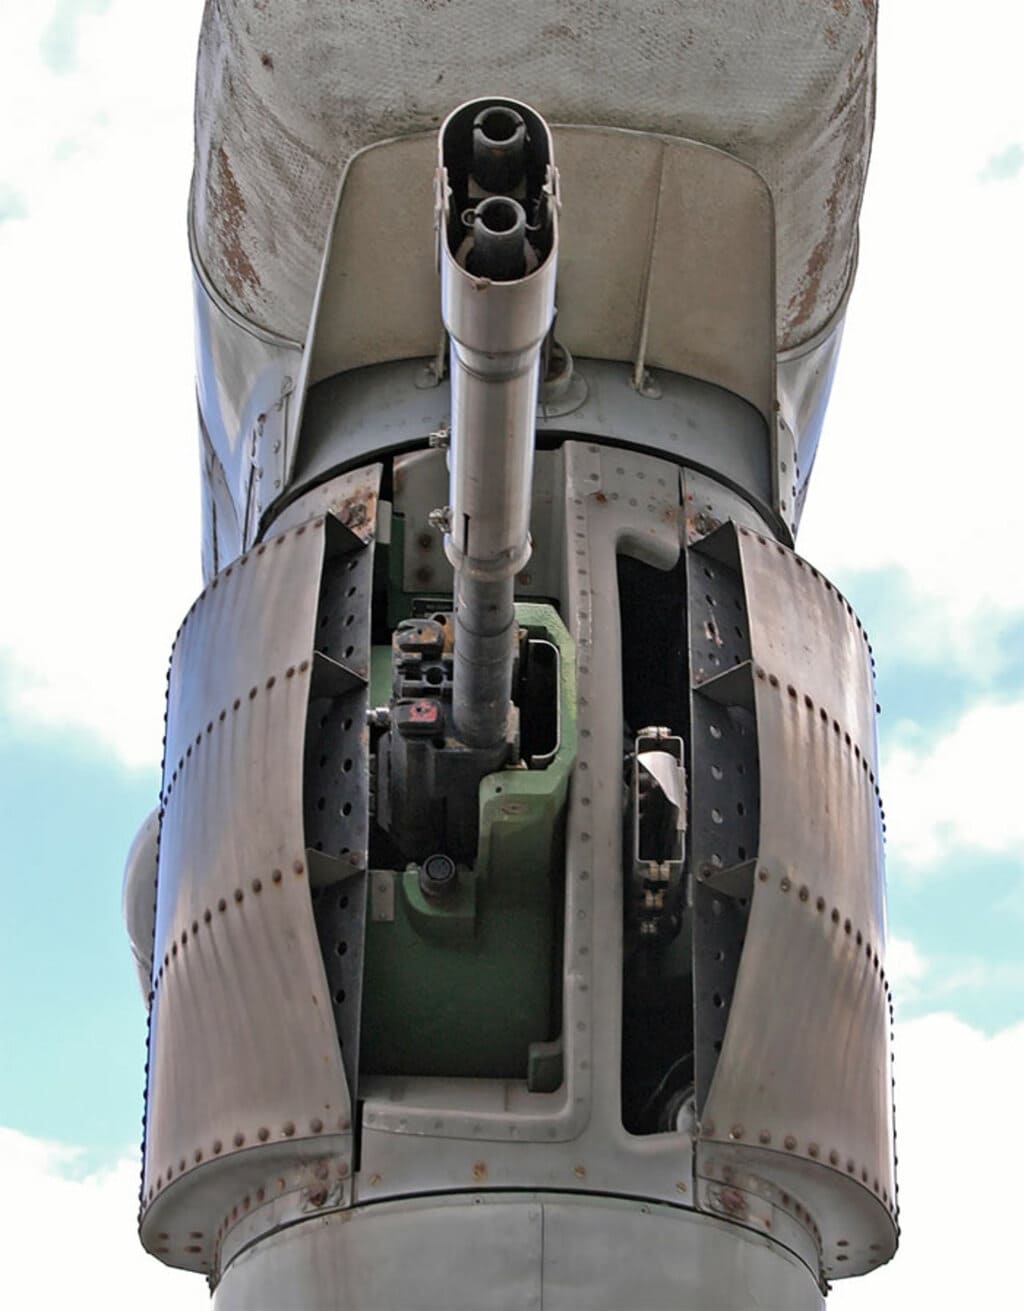 пушка ГШ-23л, установка уку-9а, бомбардировщик-ракетоносец, бомбардировщик ту-22м3